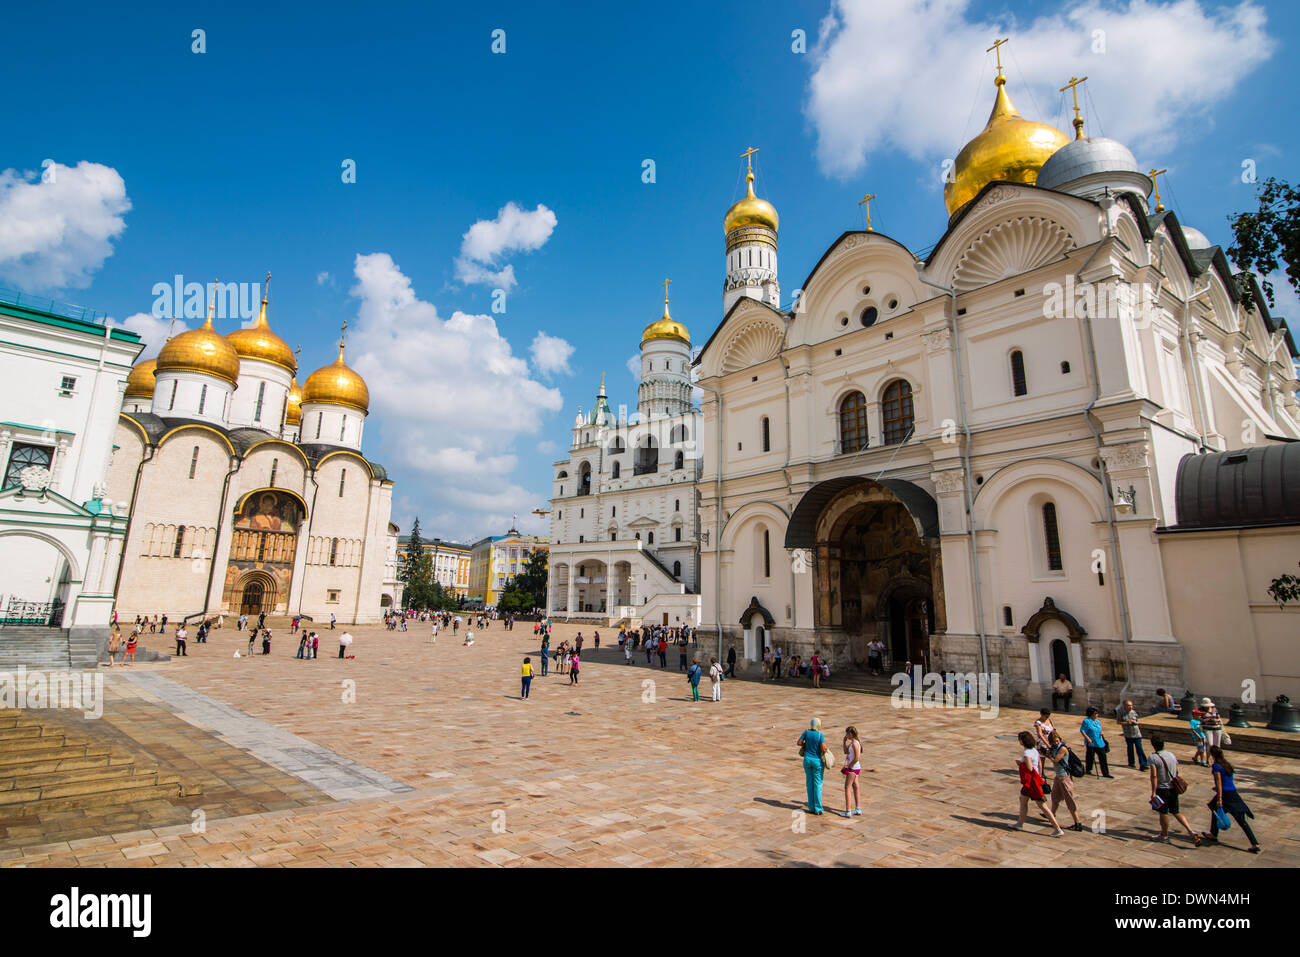 Archange et cathédrale de l'assomption sur Sabornaya Square, le Kremlin, UNESCO World Heritage Site, Moscou, Russie, Europe Banque D'Images